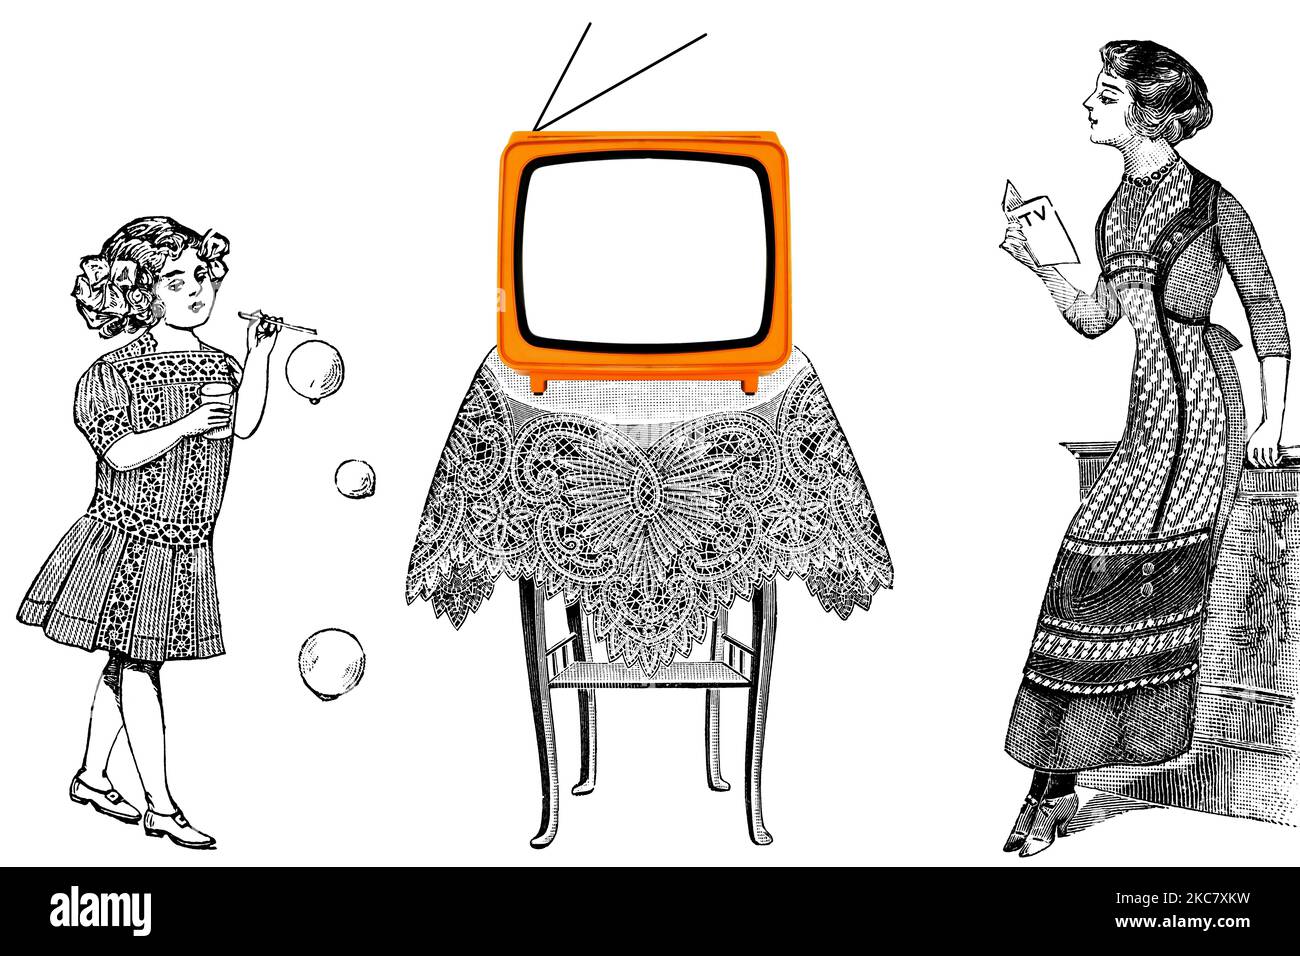 Retro alter Orange Fernseher auf einem Tisch mit Mama mit TV Guide und der Tochter, die Seifenblasen spielte, die darauf warteten, Fernsehen zu sehen. Illustration im Gravurstil Stockfoto